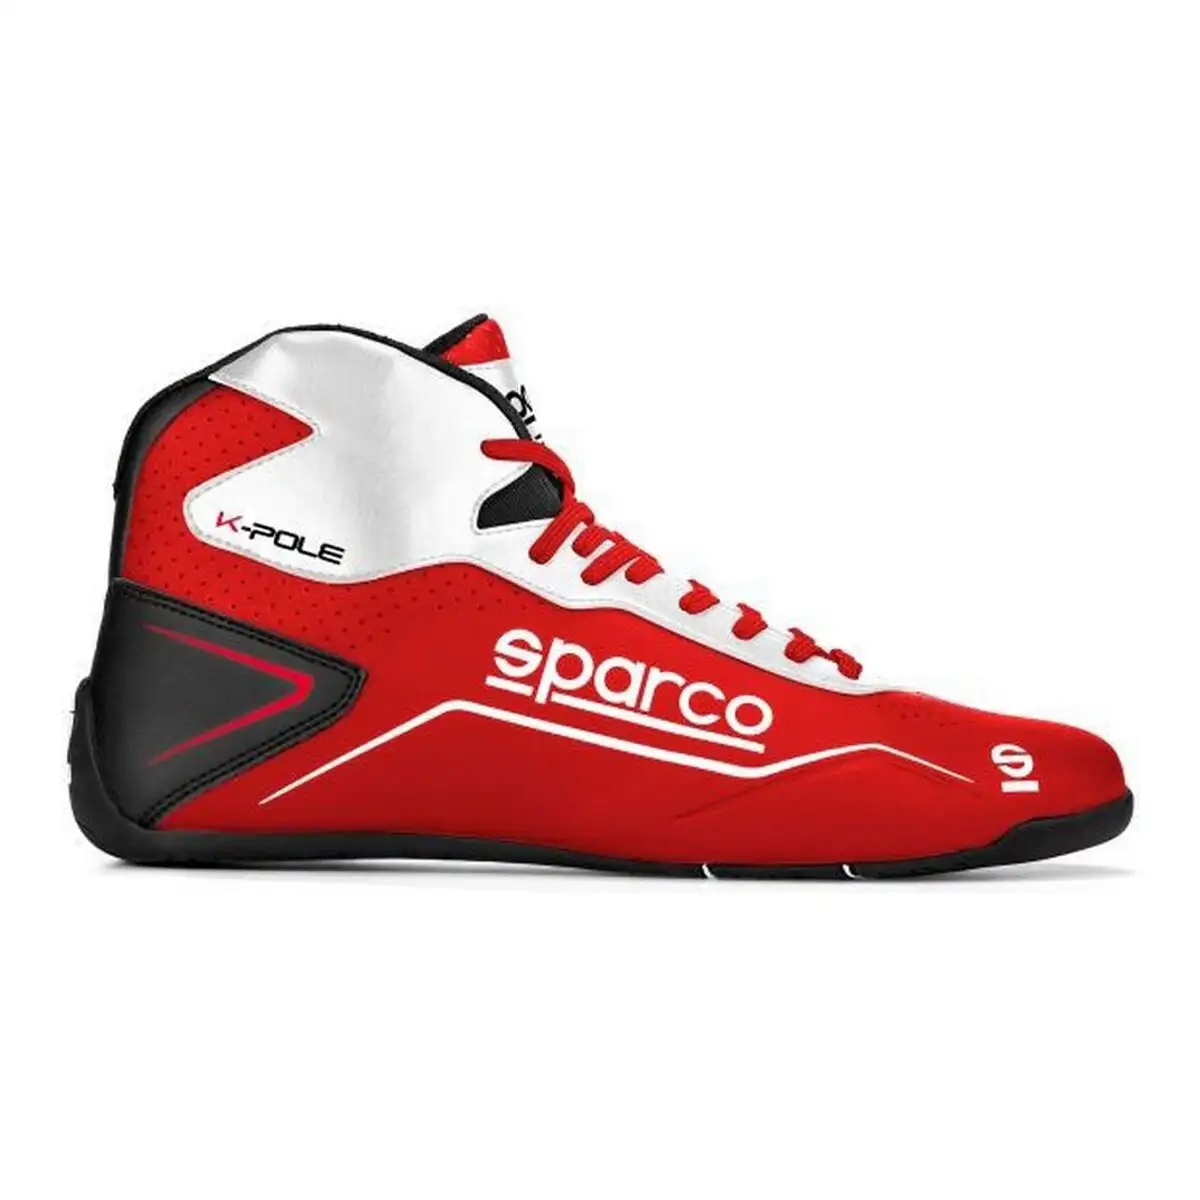 Chaussures de course sparco k pole 2020_5998. DIAYTAR SENEGAL - Votre Destination pour un Shopping Inégalé. Naviguez à travers notre sélection minutieuse pour trouver des produits qui répondent à tous vos besoins.